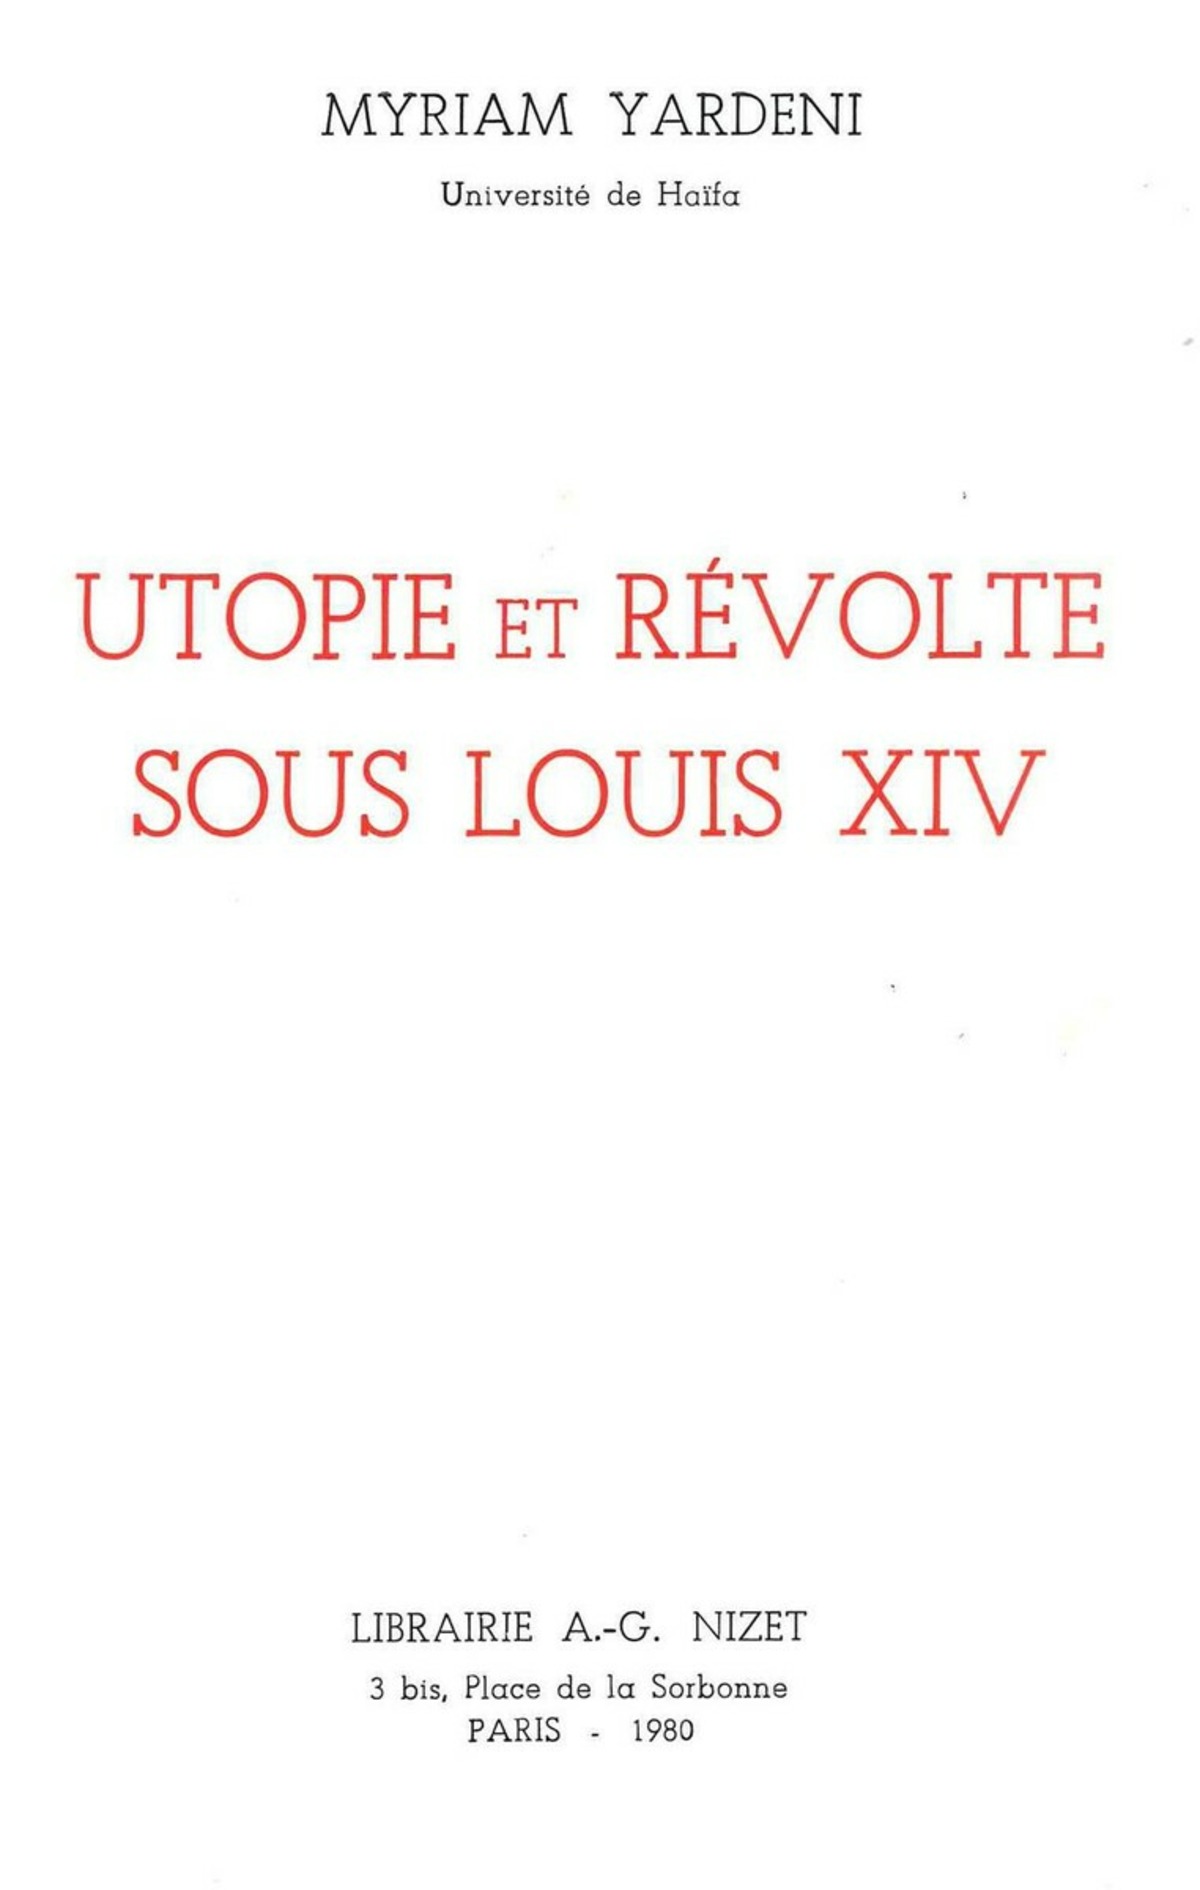 Utopie et révolte sous Louis XIV